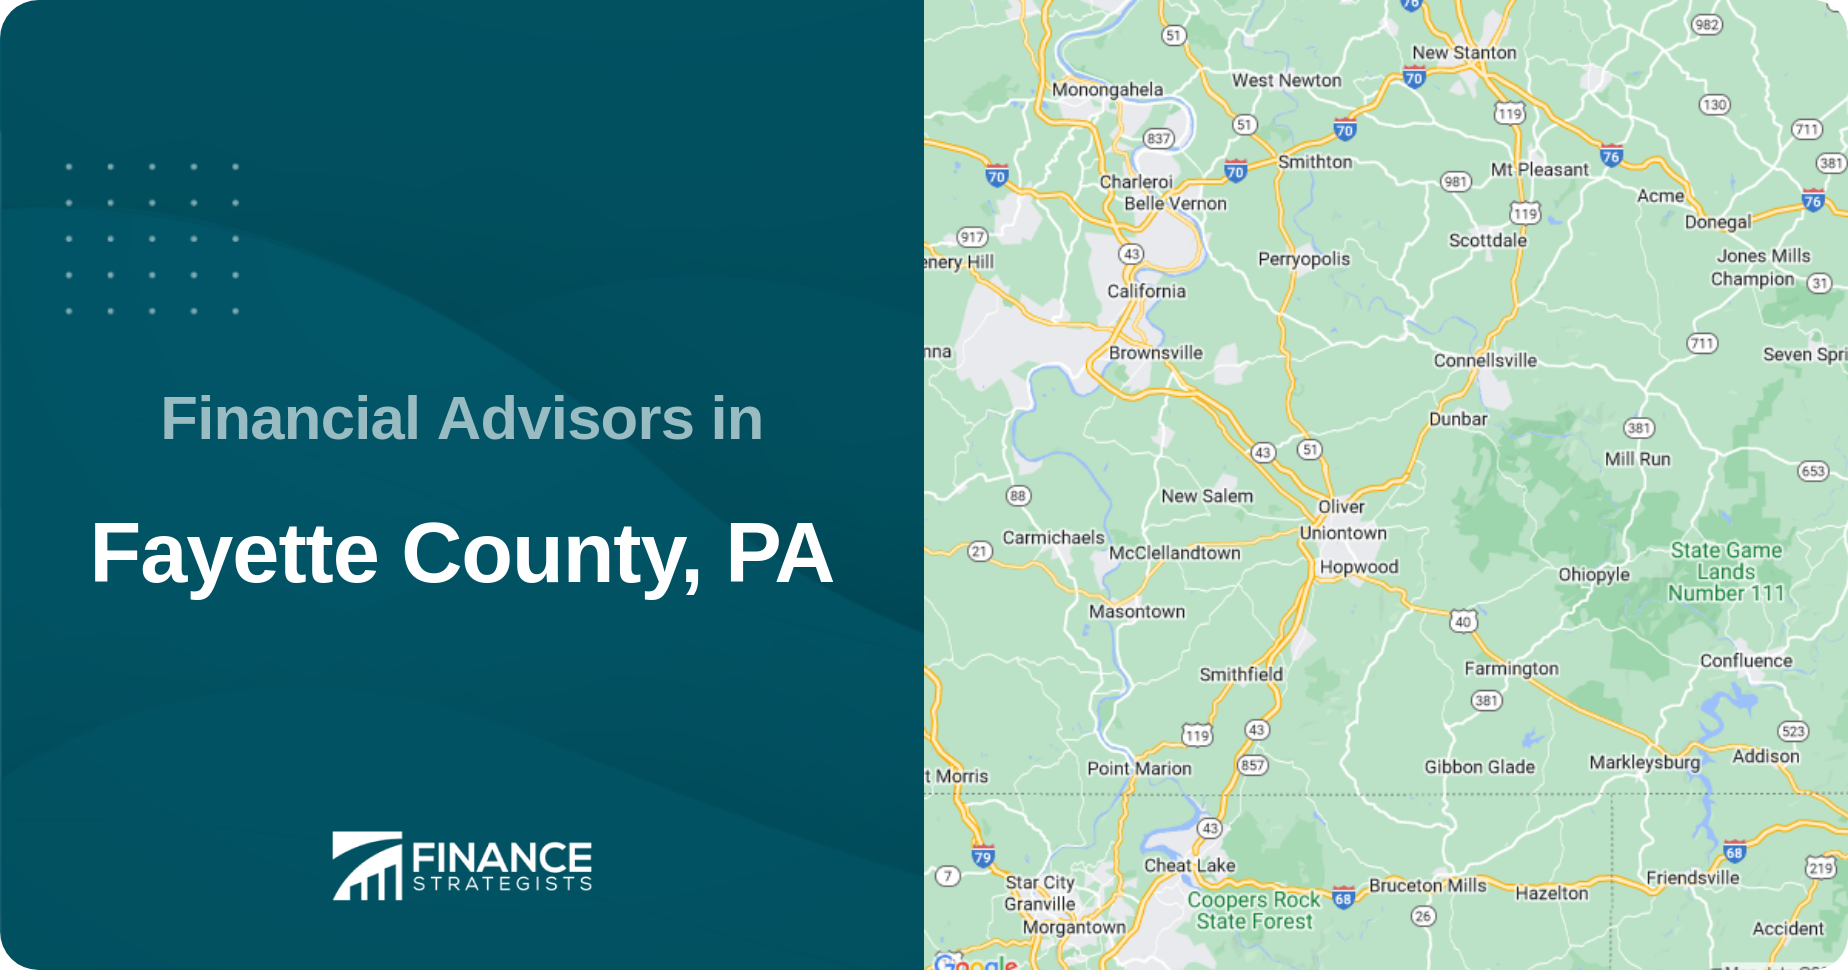 Financial Advisors in Fayette County, PA